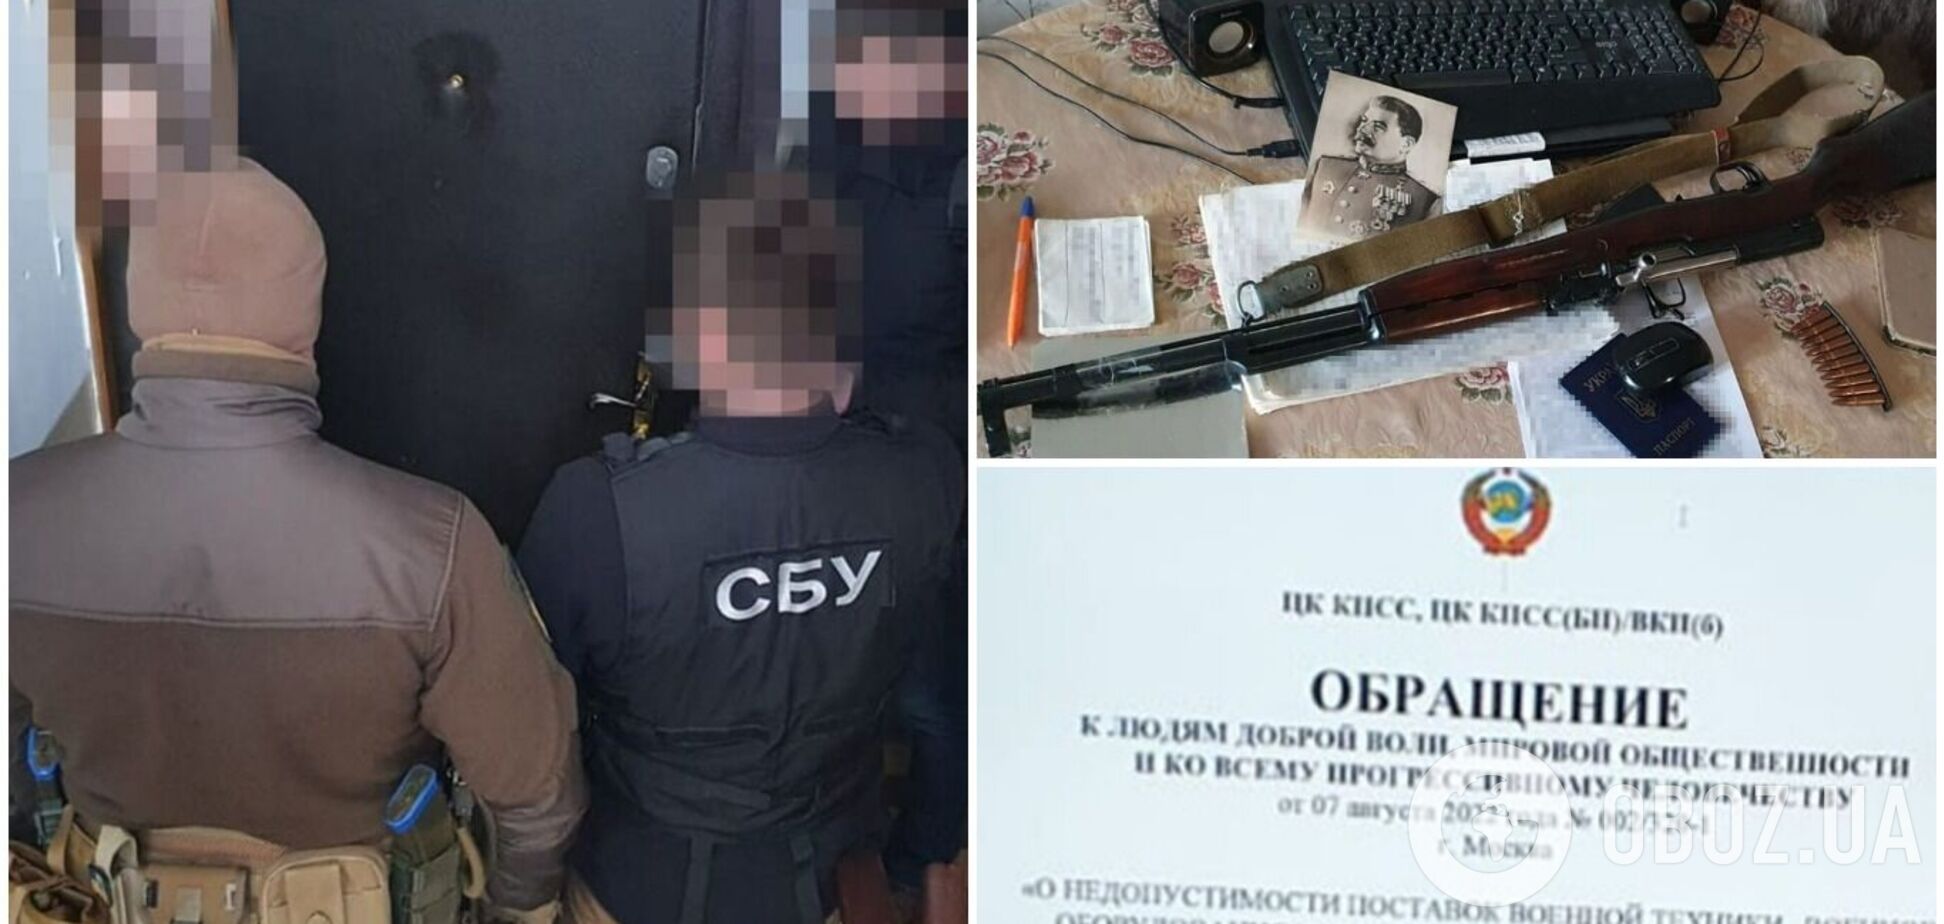 СБУ обезвредила в Украине подпольные ячейки 'компартии большевиков', подконтрольные ФСБ. Фото